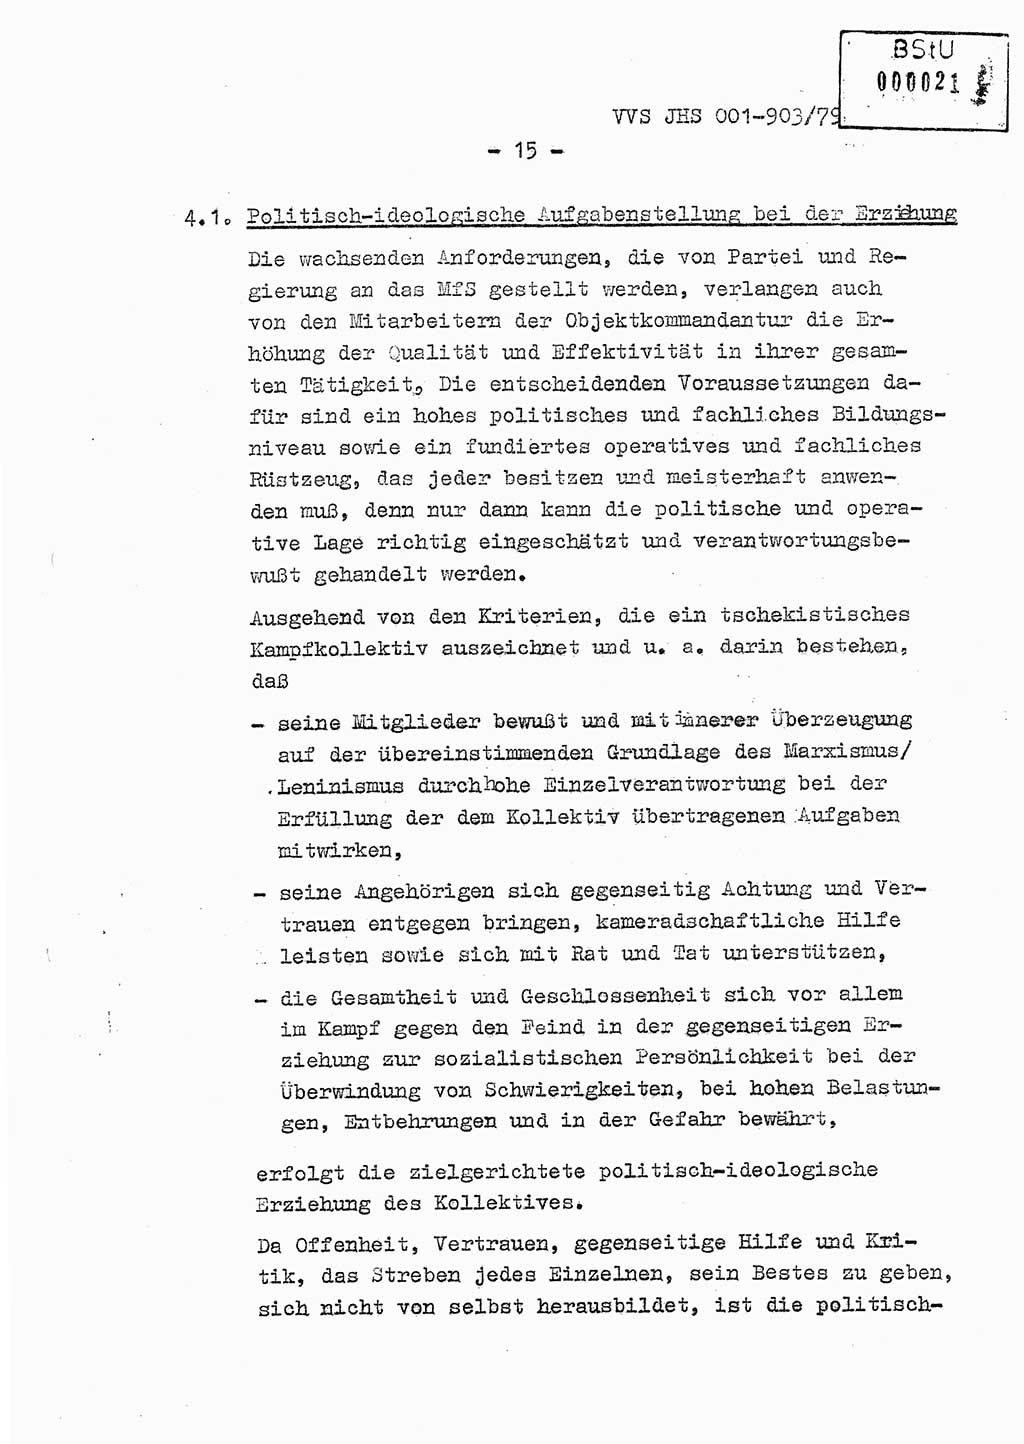 Fachschulabschlußarbeit Oberleutnant Jochen Pfeffer (HA Ⅸ/AGL), Ministerium für Staatssicherheit (MfS) [Deutsche Demokratische Republik (DDR)], Juristische Hochschule (JHS), Vertrauliche Verschlußsache (VVS) 001-903/79, Potsdam 1979, Seite 15 (FS-Abschl.-Arb. MfS DDR JHS VVS 001-903/79 1979, S. 15)